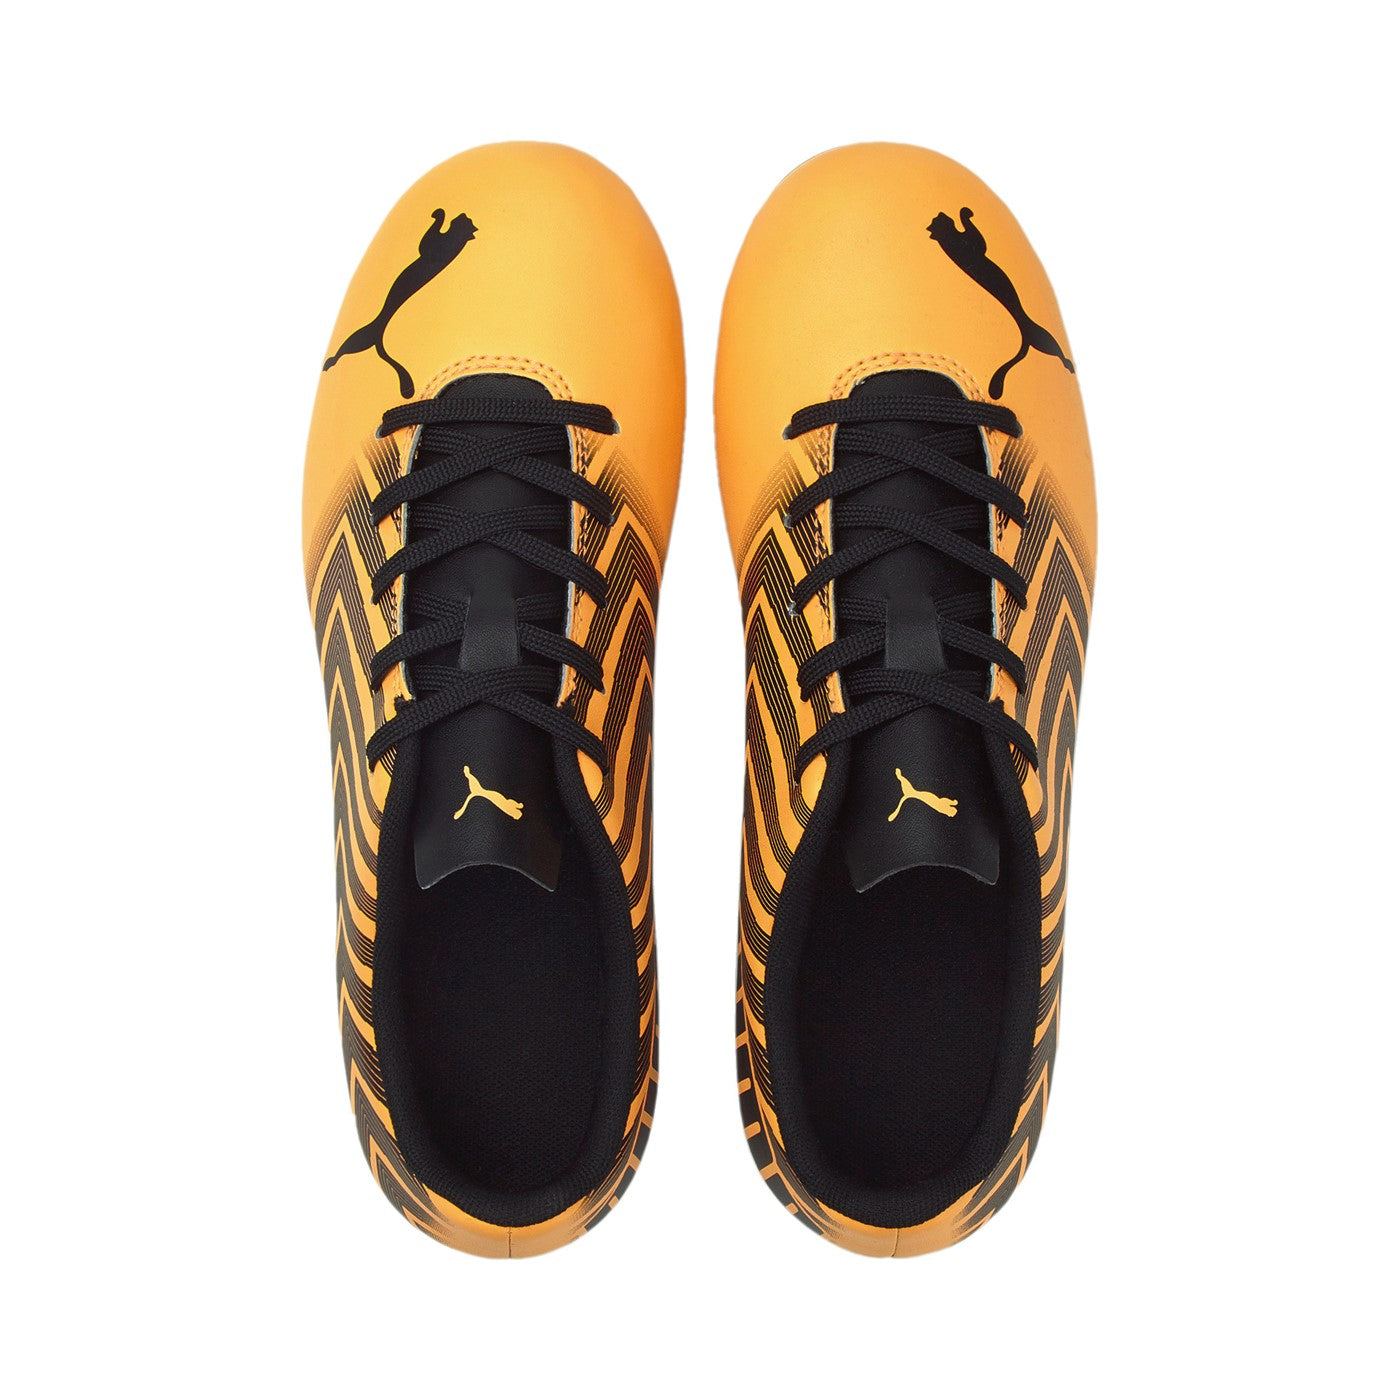 Puma scarpa da calcio da ragazzo Tacto II FG/AG 106704 01 arancio nero